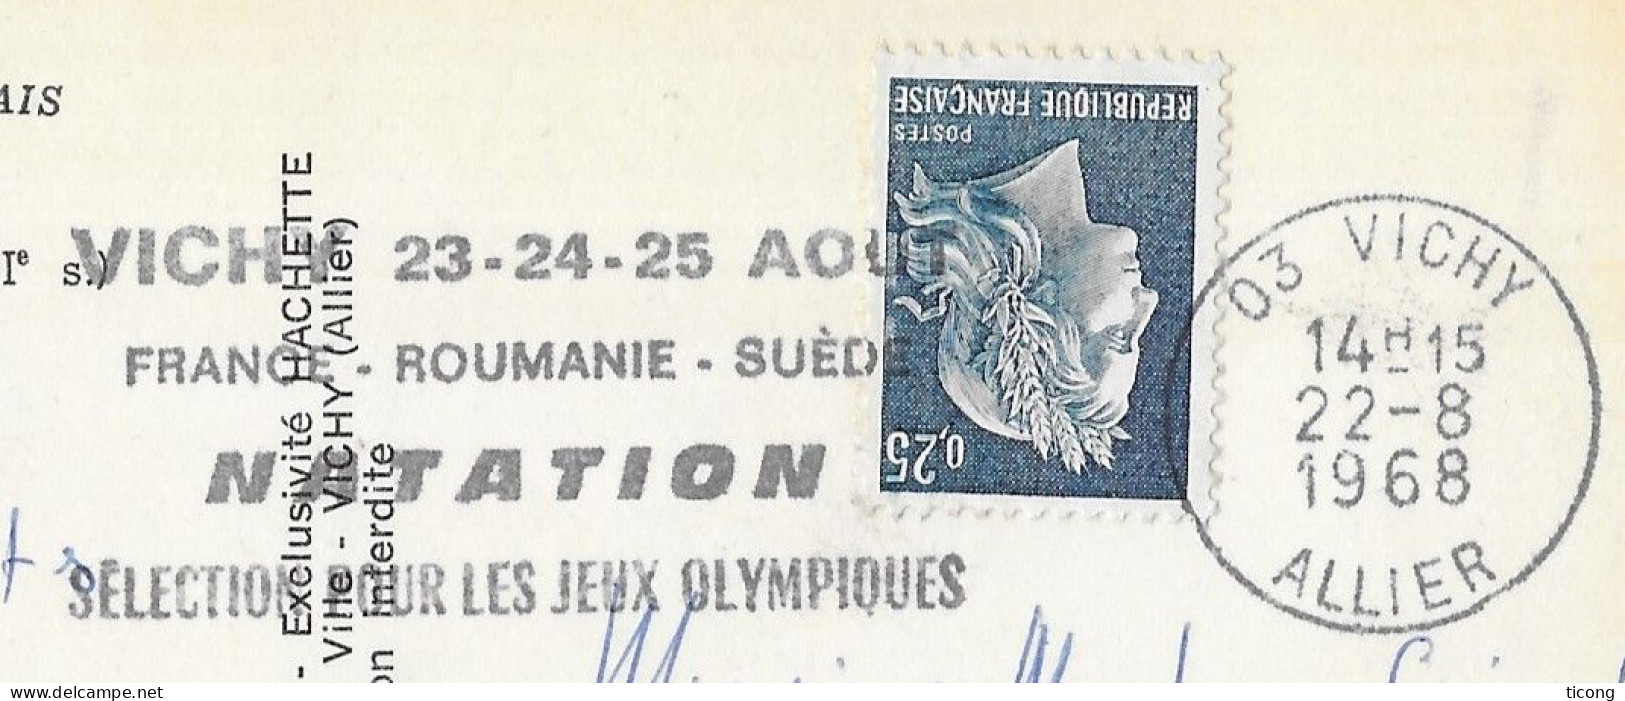 VICHY ALLIER 1968 FLAMME SELECTION POUR LES JEUX OLYMPIQUES DE NATATION FRANCE ROUMANIE SUEDE, CARTE HERISSON MOULIN - Brieven En Documenten